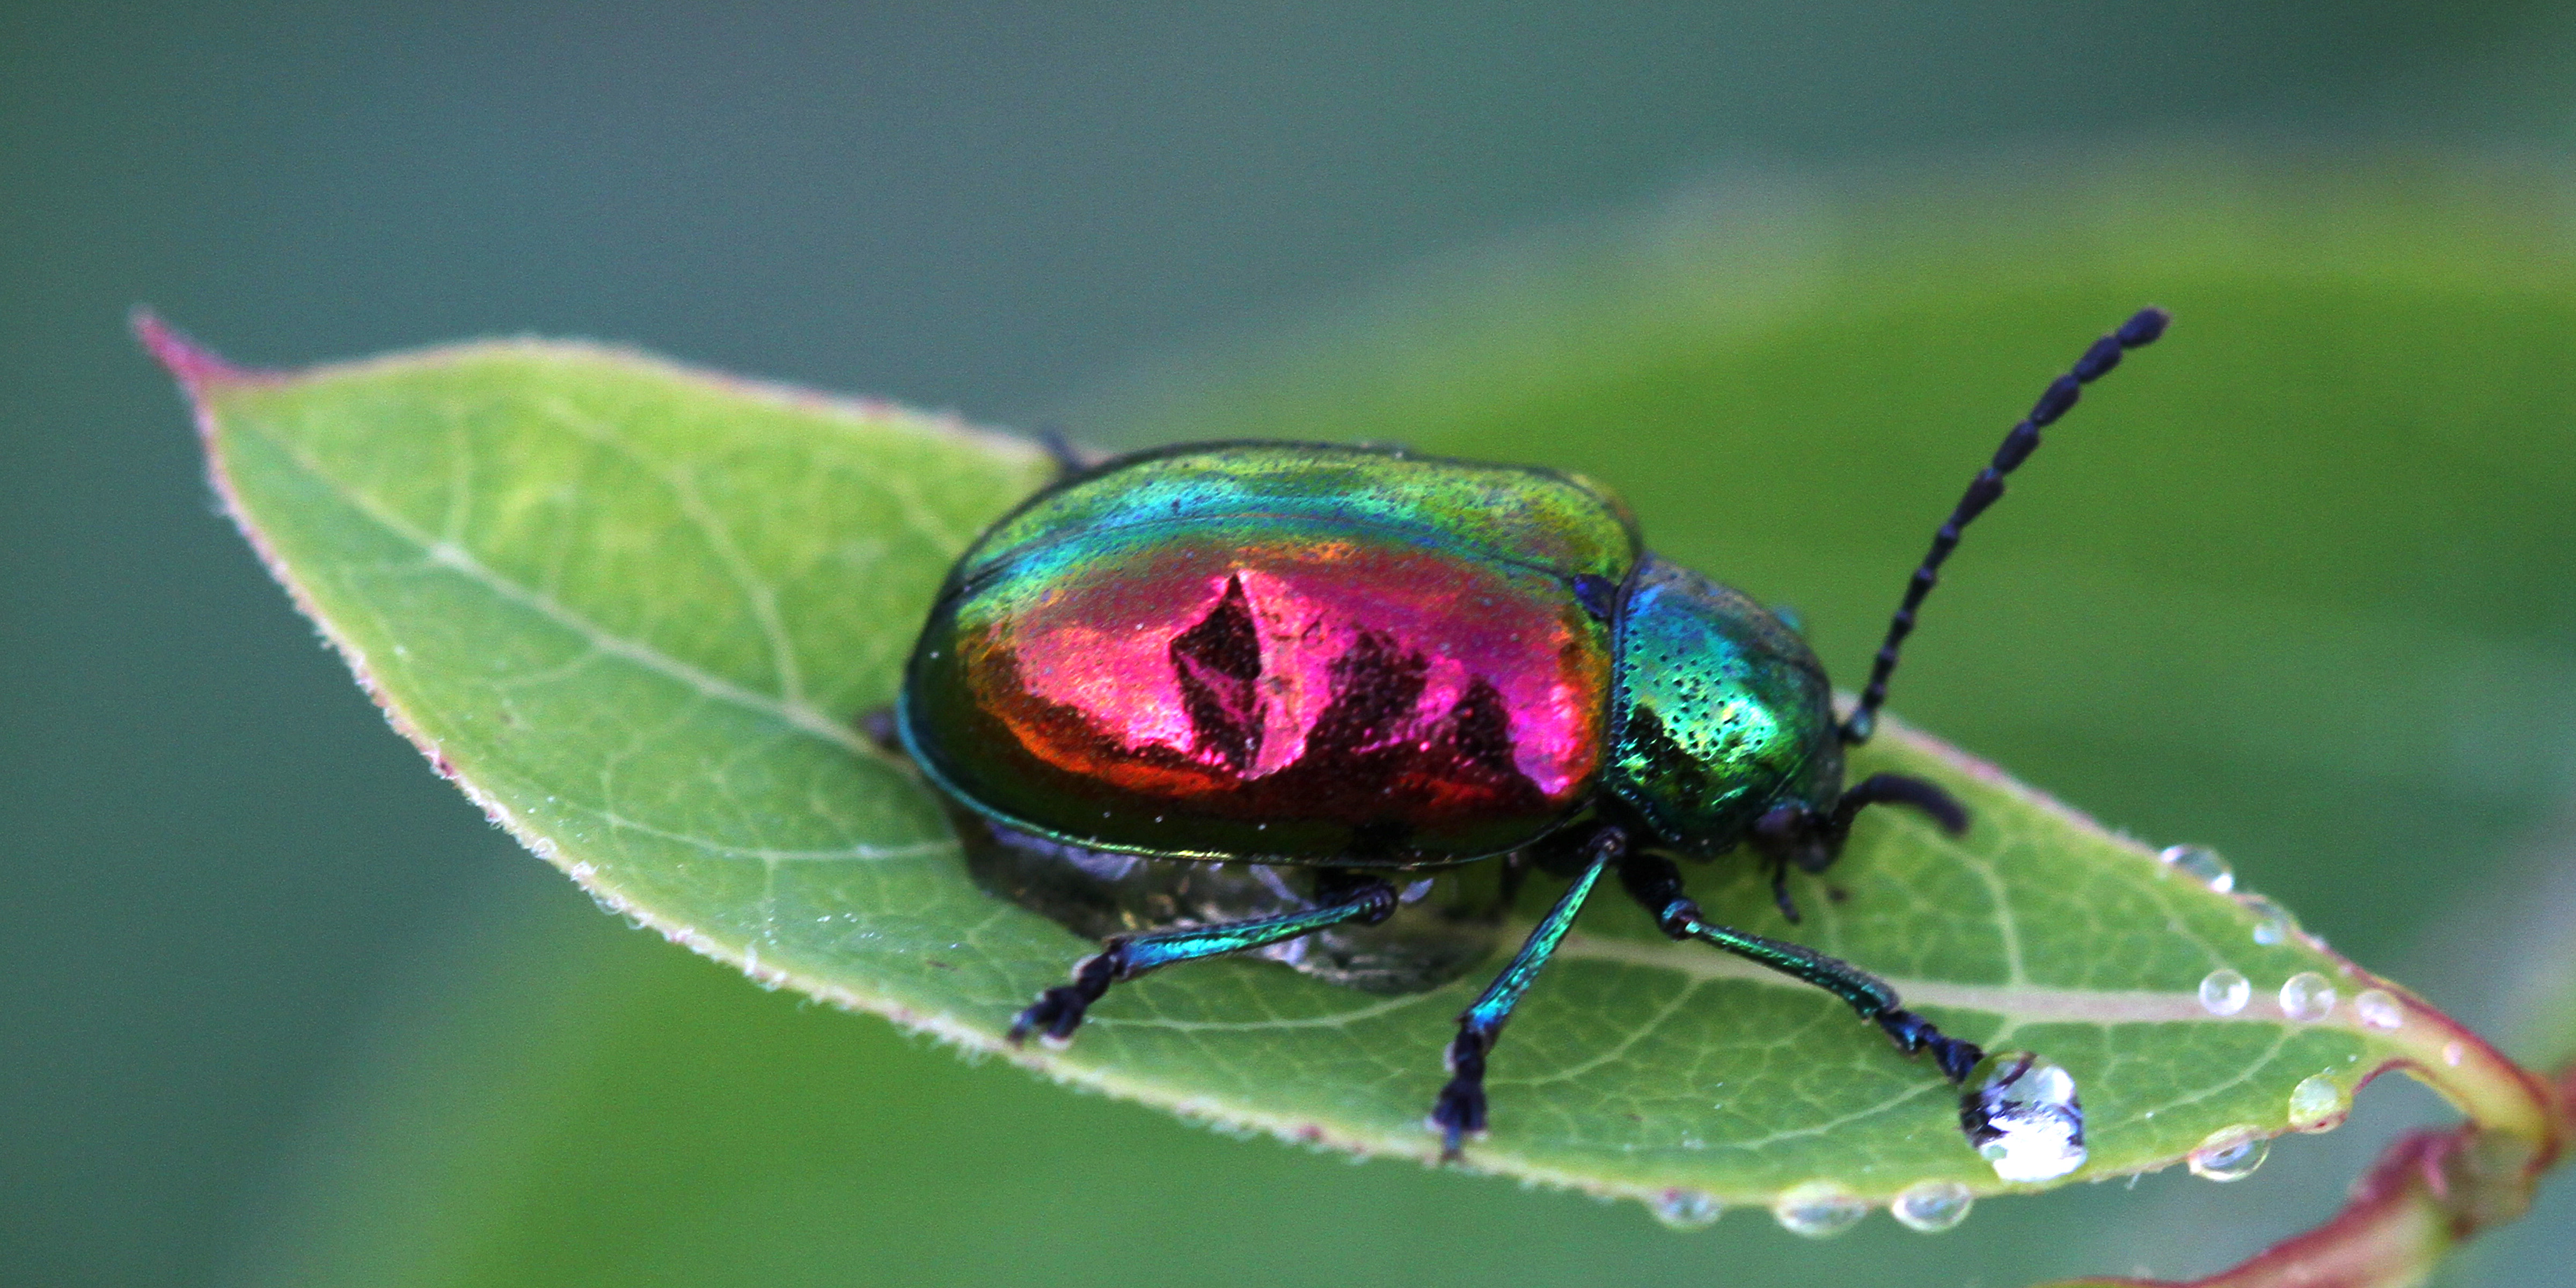 Dogbane beetle photo